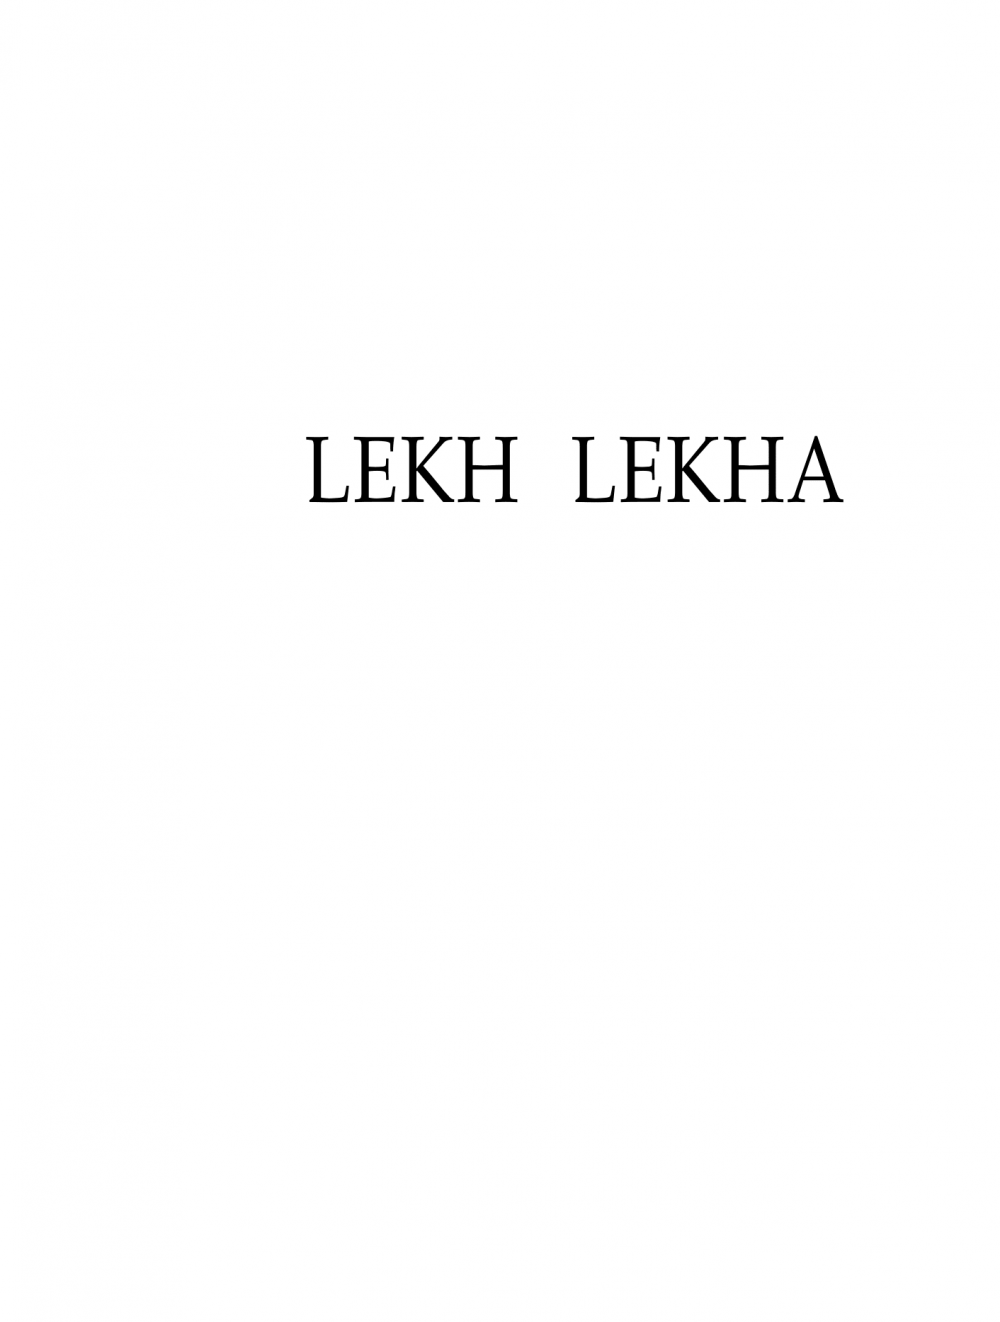 Lekh Lekha